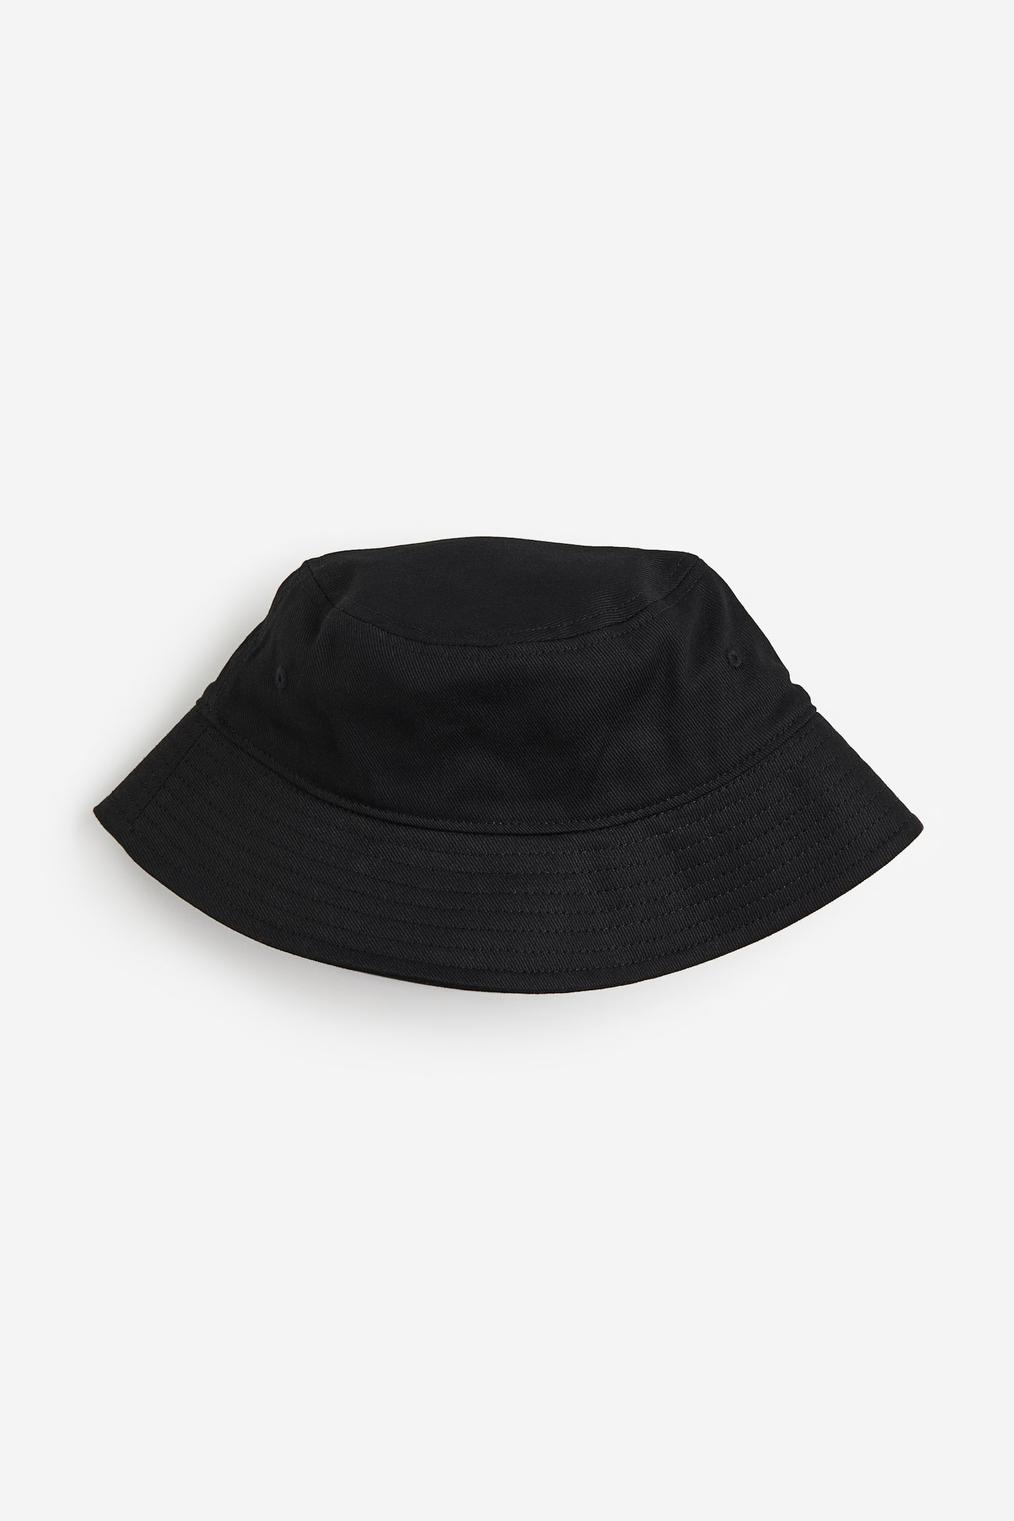 Bavlnený klobúk v akcii za 2499,99€ v H&M